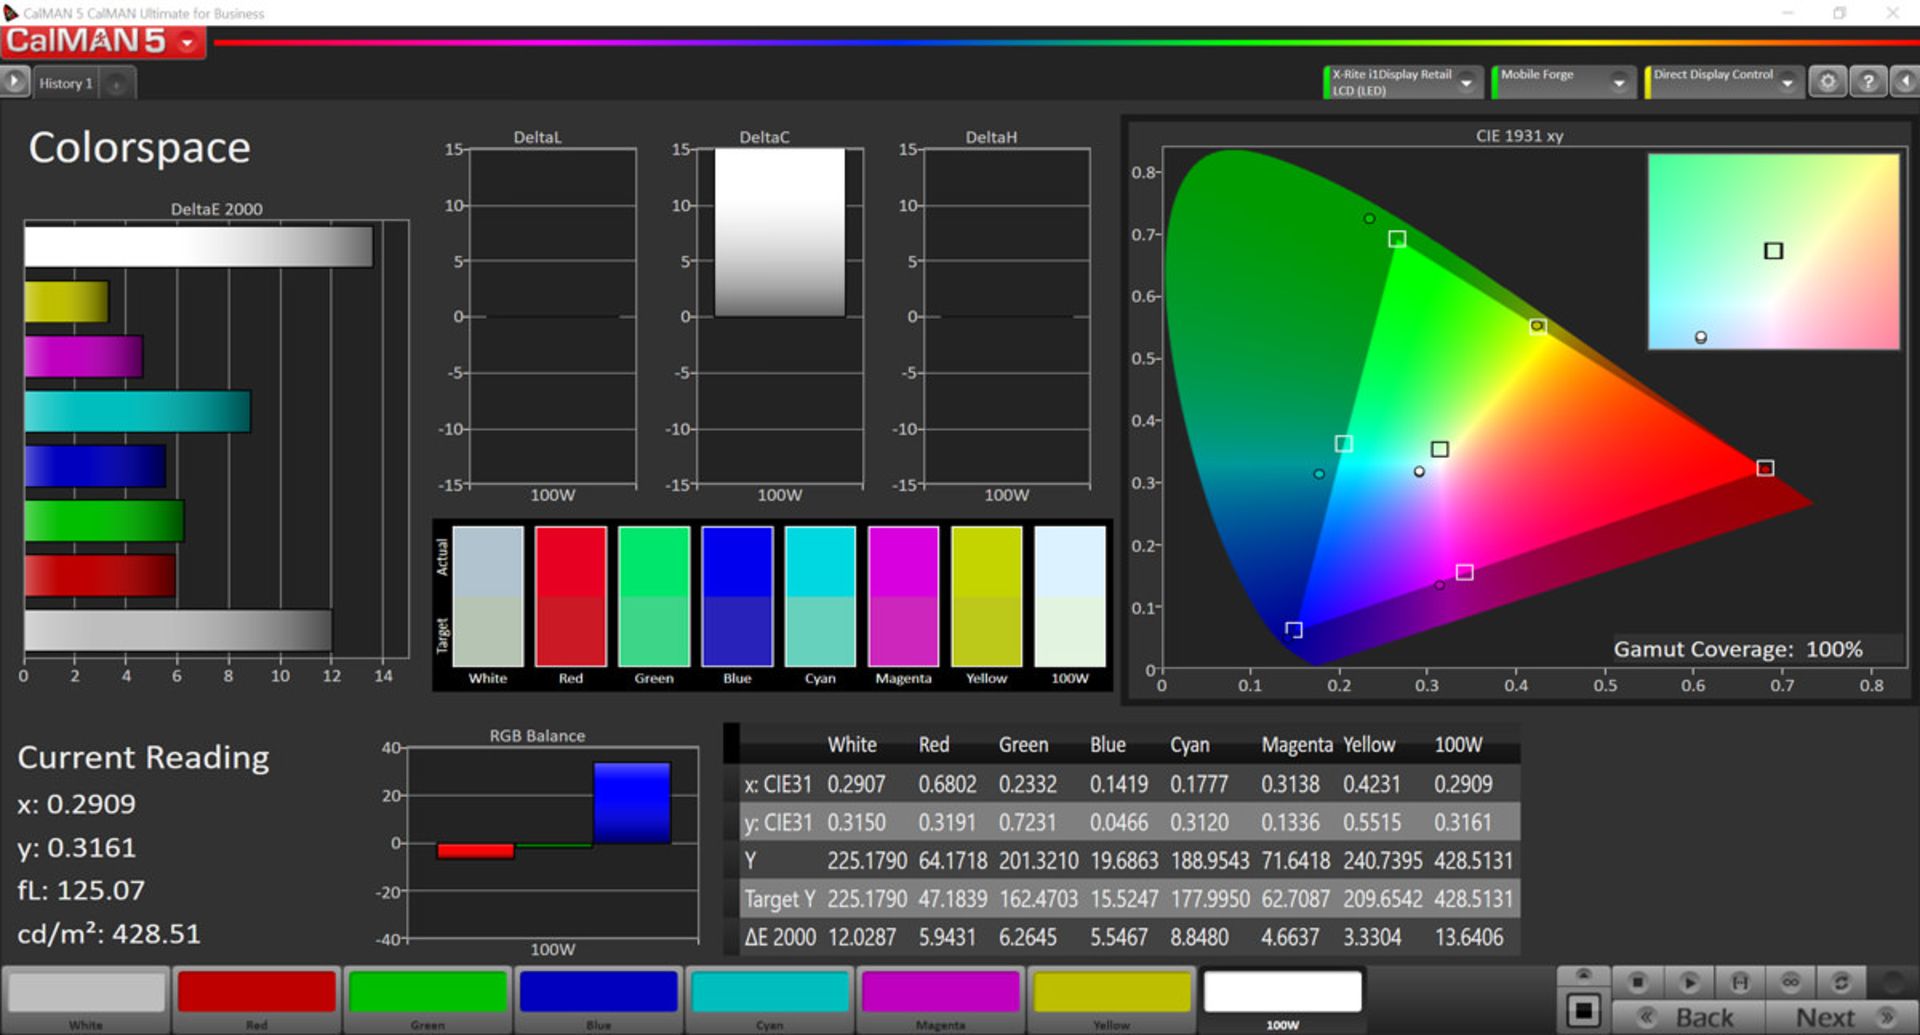 پوشش رنگی در حالت Increased Contrast در فضای رنگی DCI-P3 برای گوشی می میکس ۳